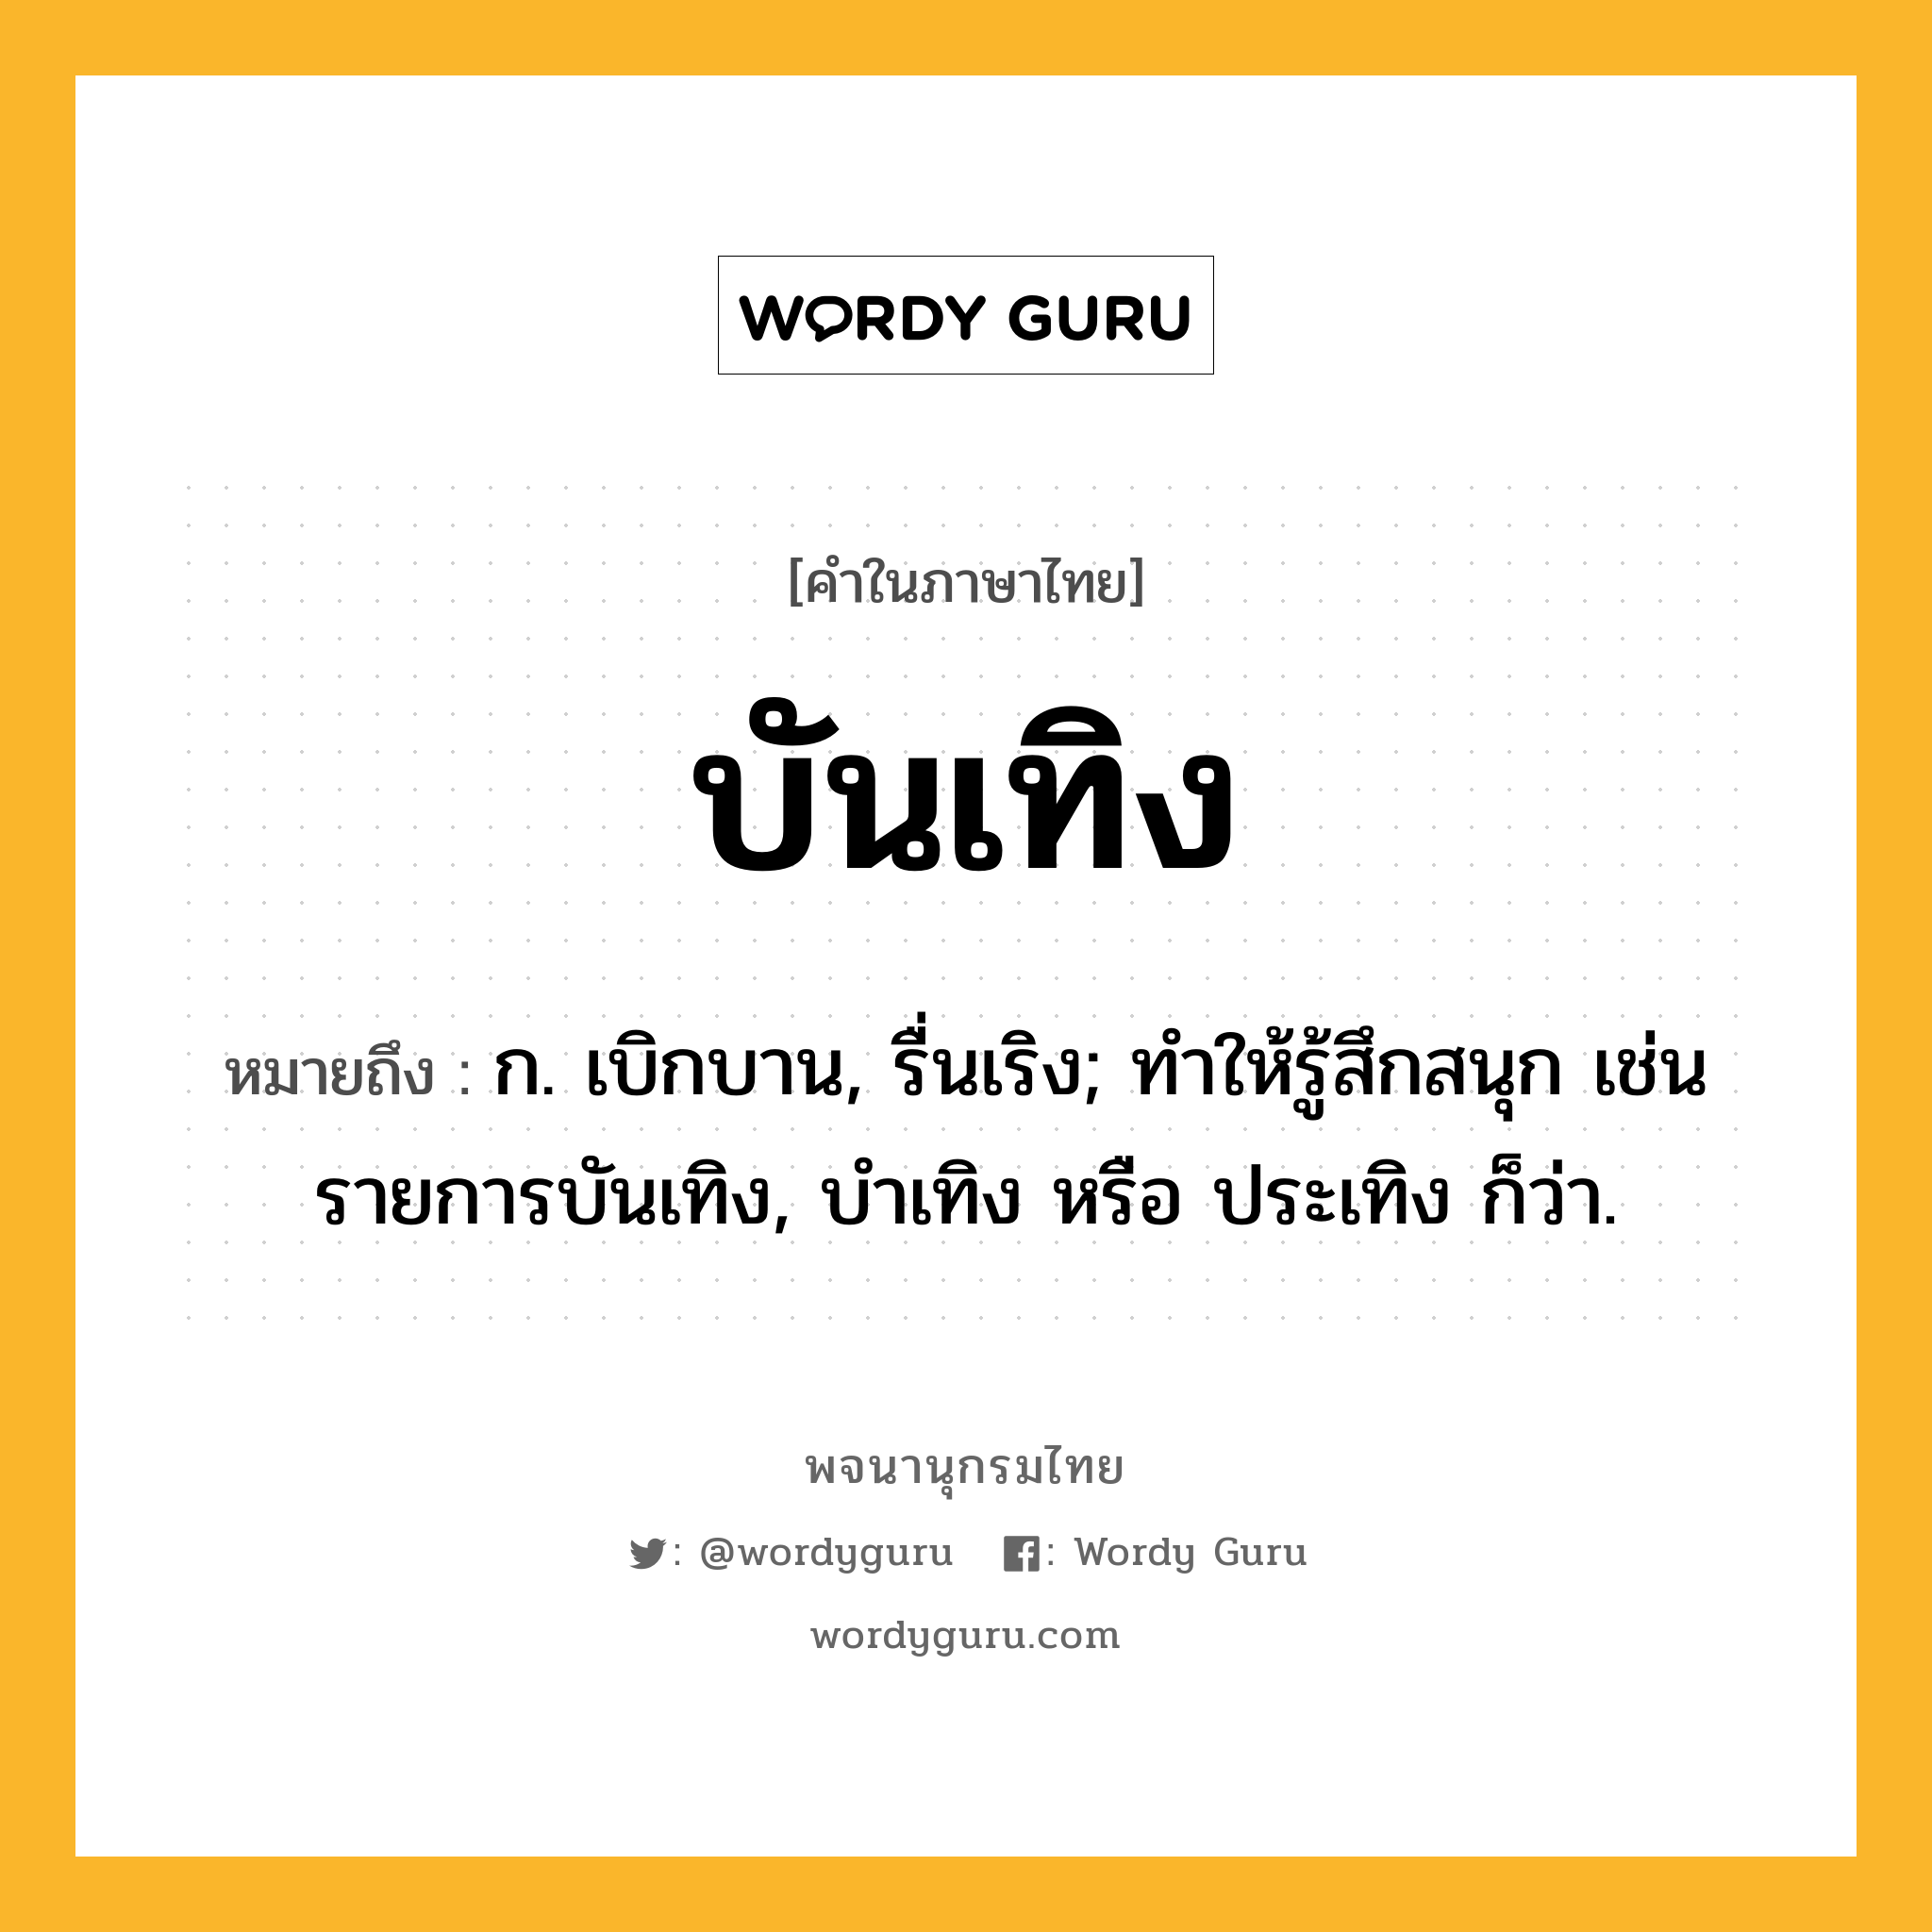 บันเทิง หมายถึงอะไร?, คำในภาษาไทย บันเทิง หมายถึง ก. เบิกบาน, รื่นเริง; ทําให้รู้สึกสนุก เช่น รายการบันเทิง, บำเทิง หรือ ประเทิง ก็ว่า.